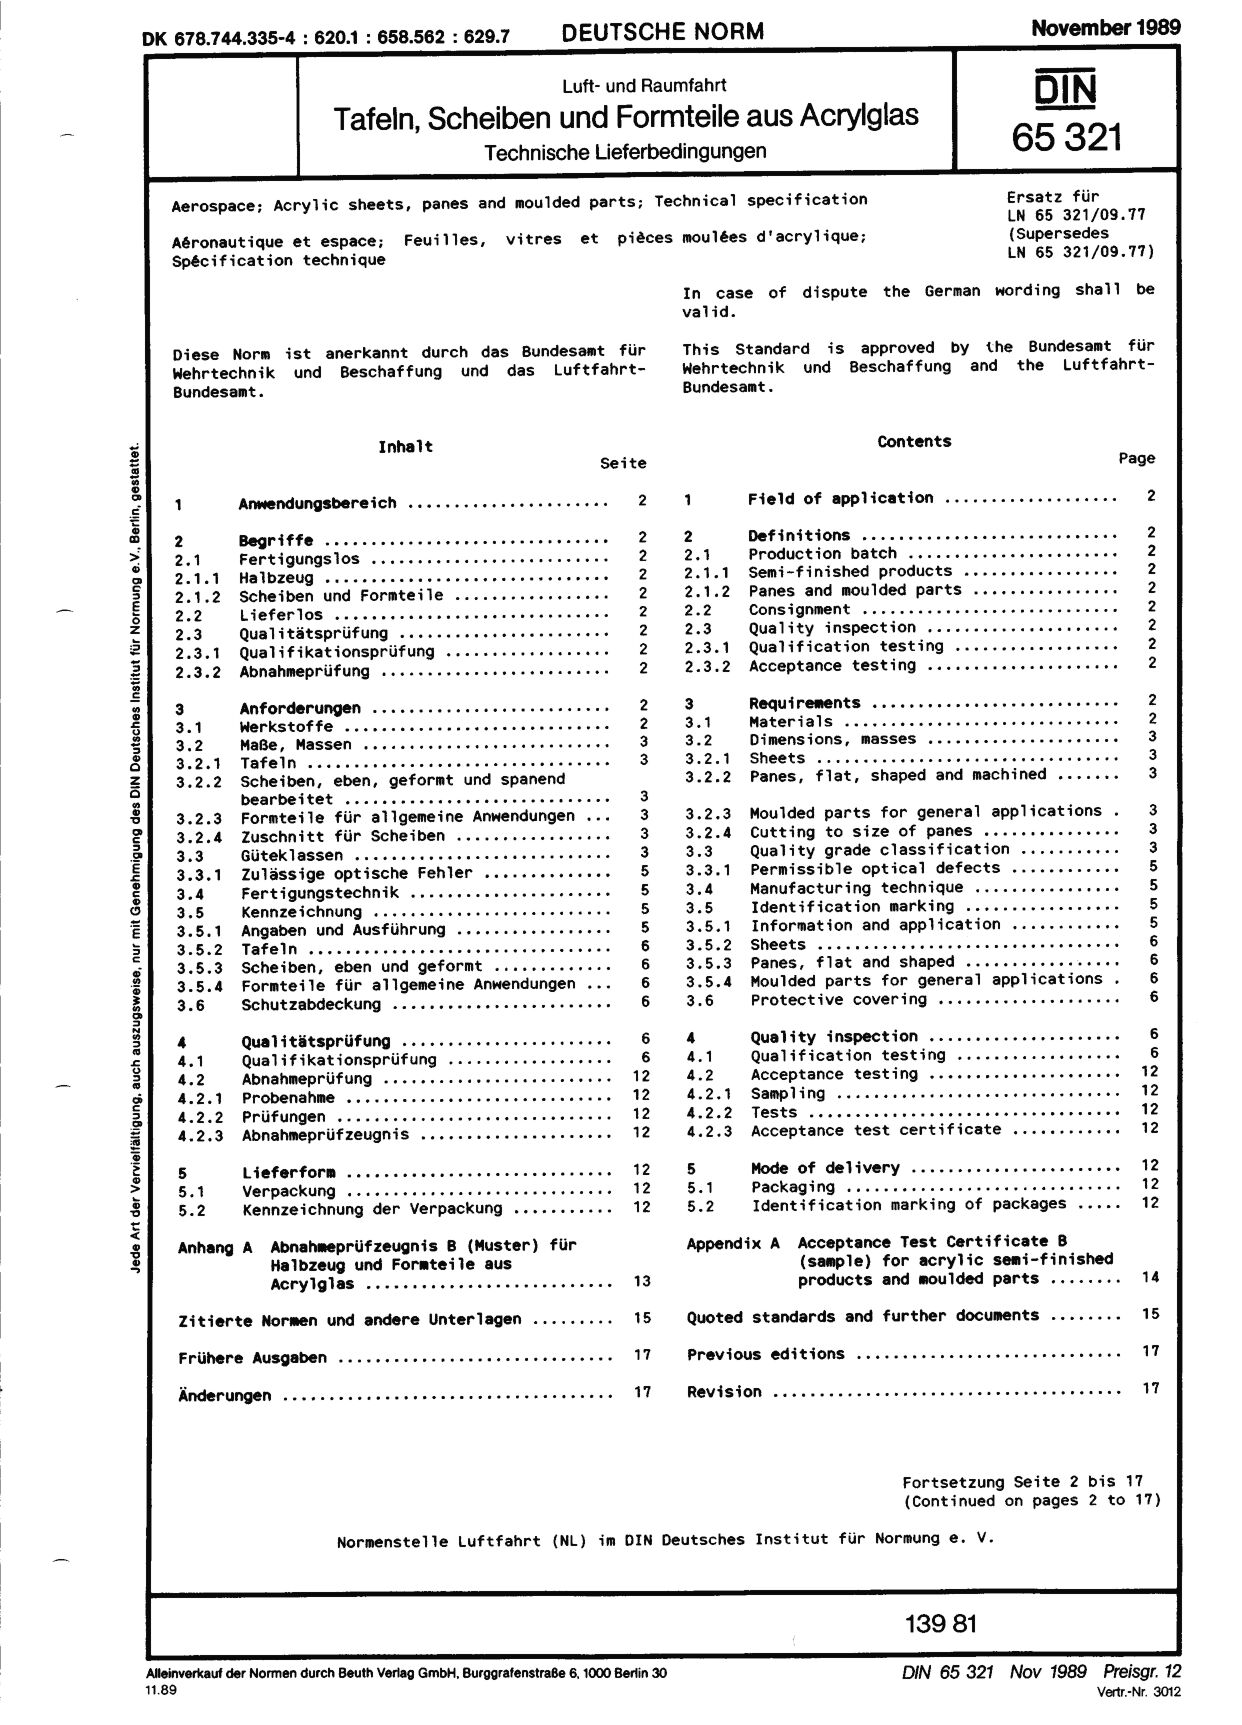 DIN 65321:1989